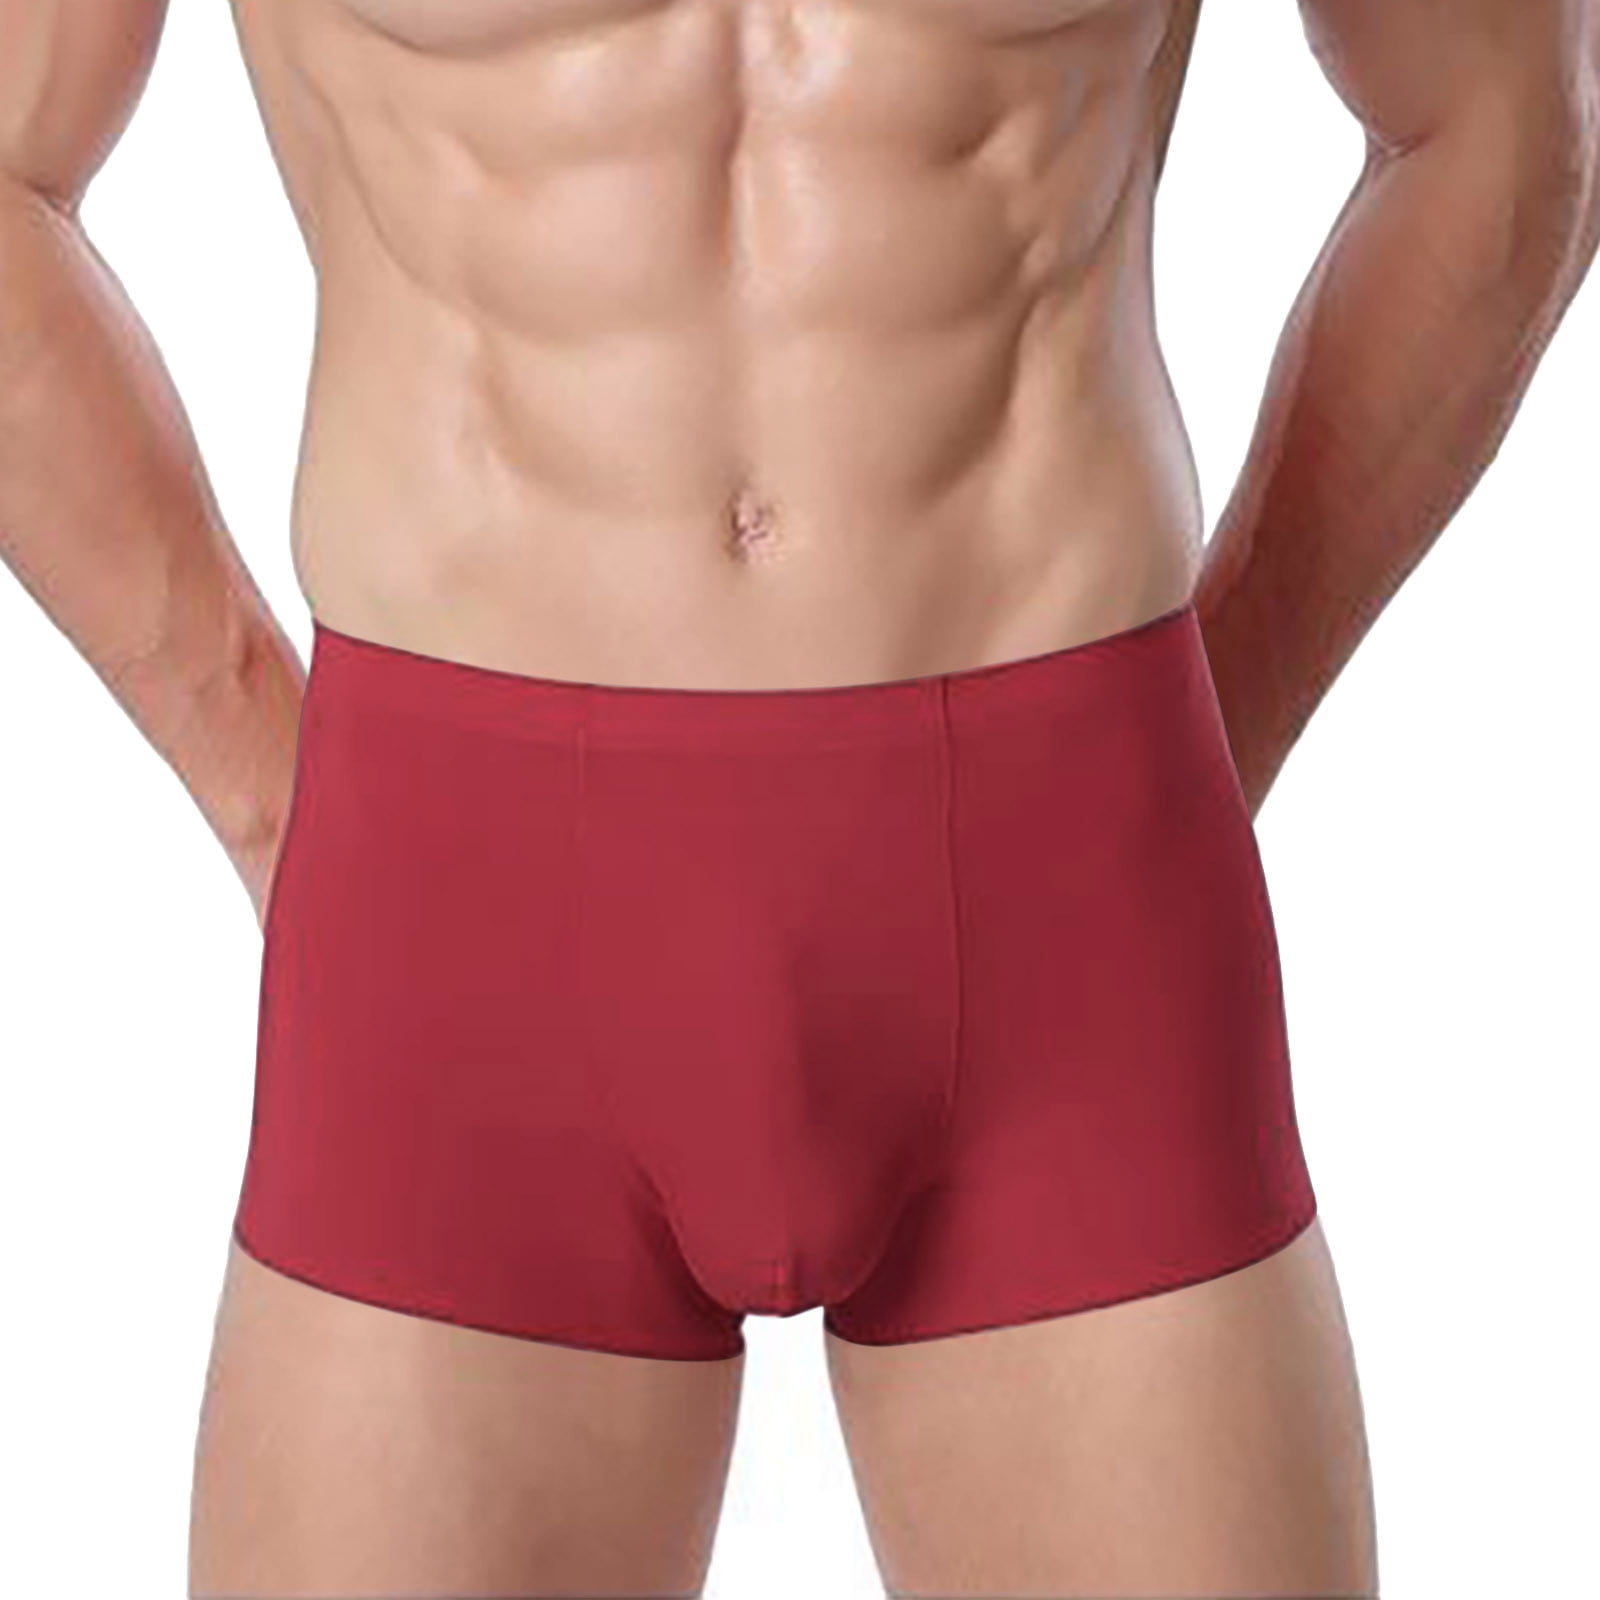 Soft cheap designer underwear men For Comfort 